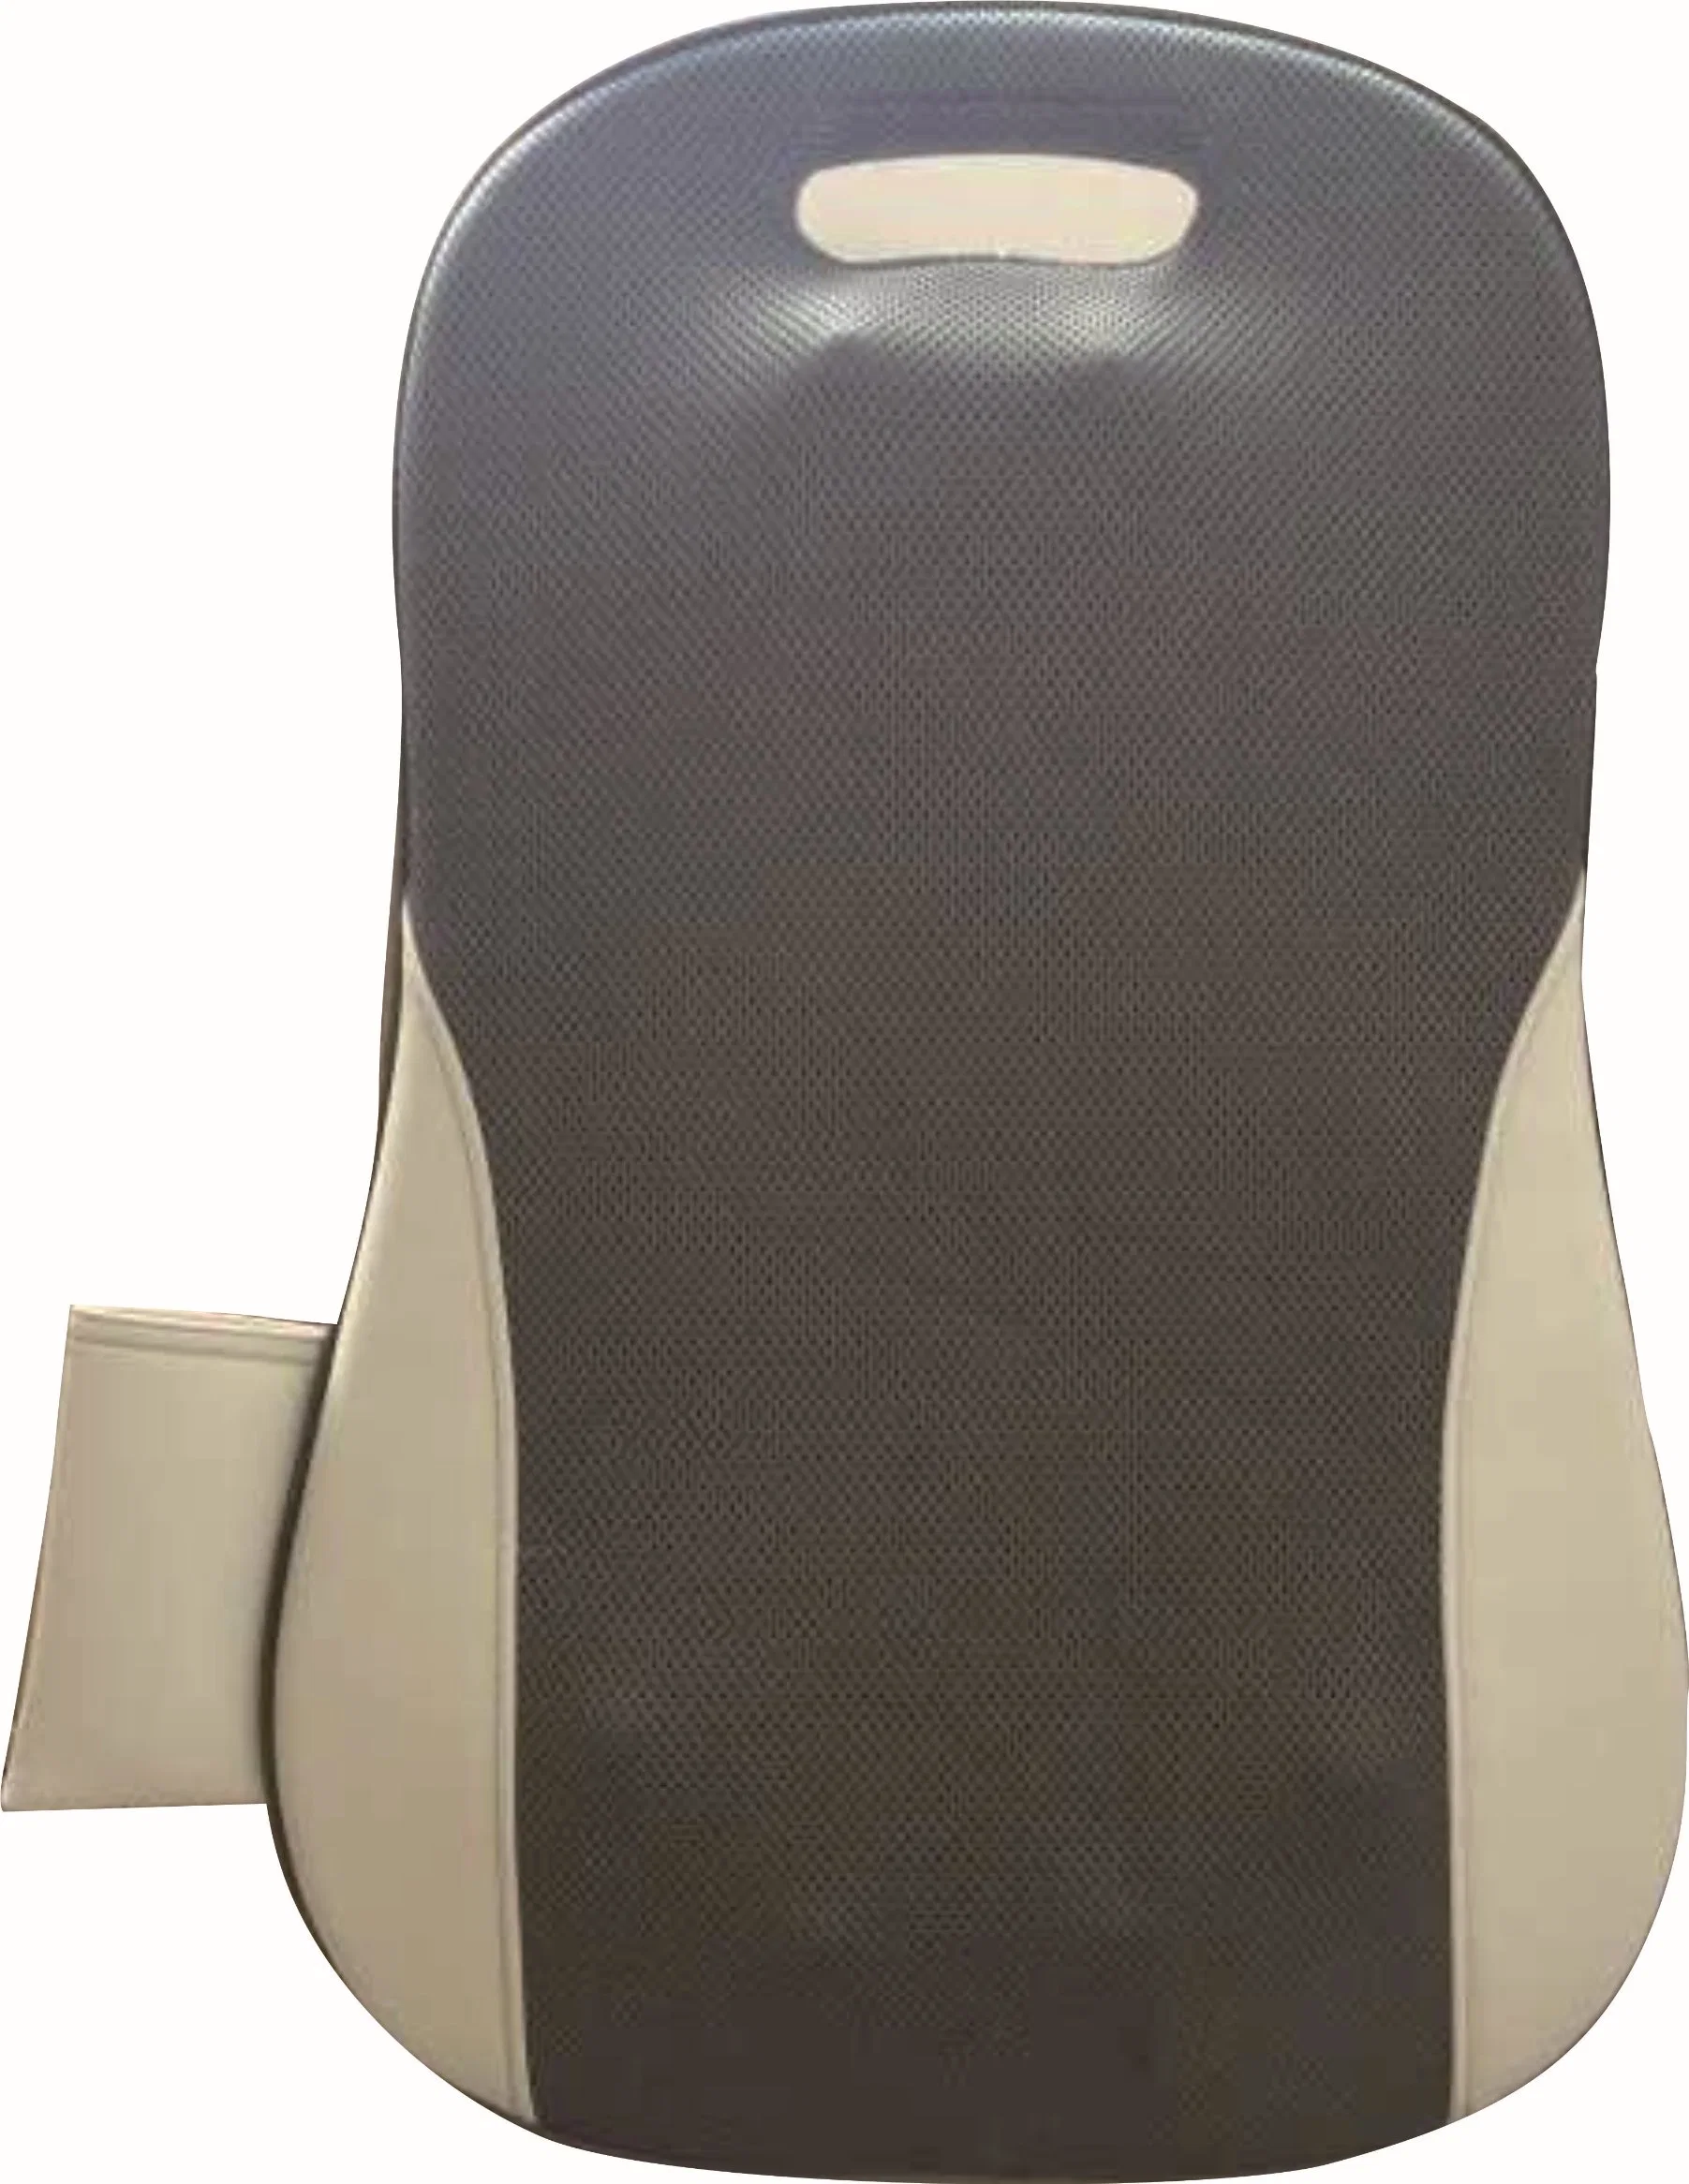 Silla de oficina Shiatsu eléctrico amasar espalda apoyo cintura Masaje portátil Masajeador de gancho con mando a distancia